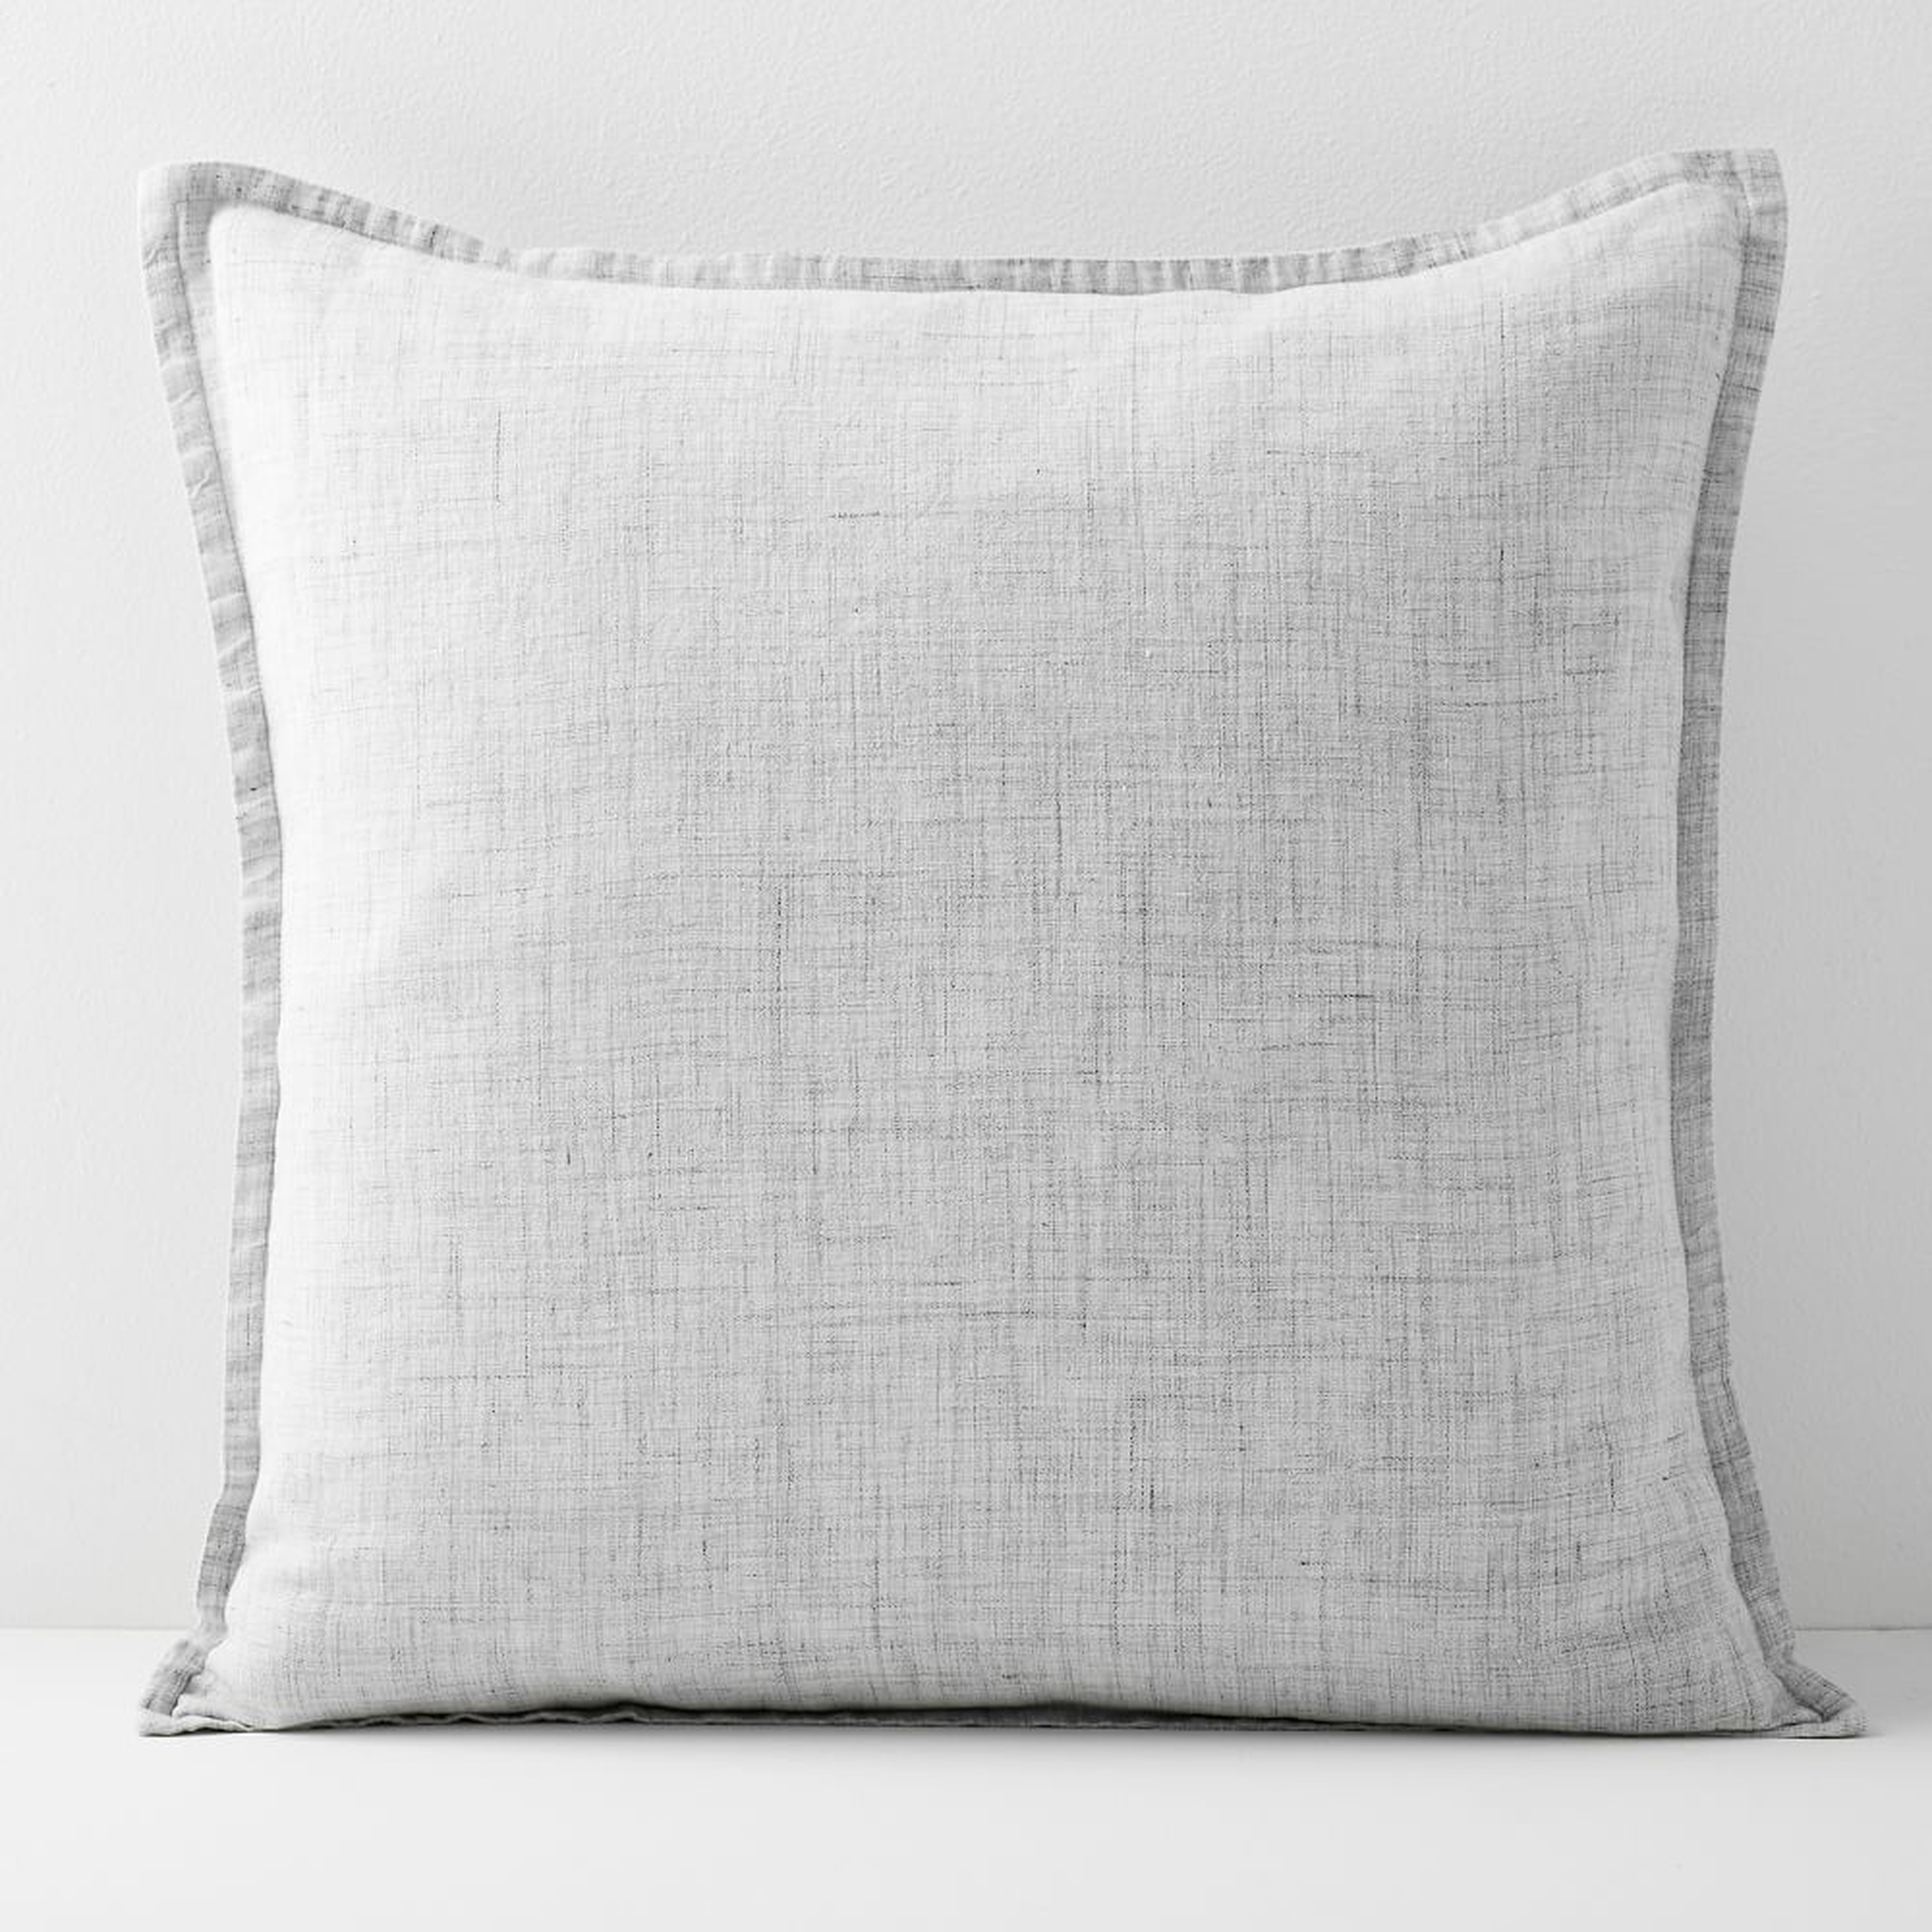 European Flax Linen Pillow Cover, 20"x20", Frost Gray Fiber Dye - West Elm